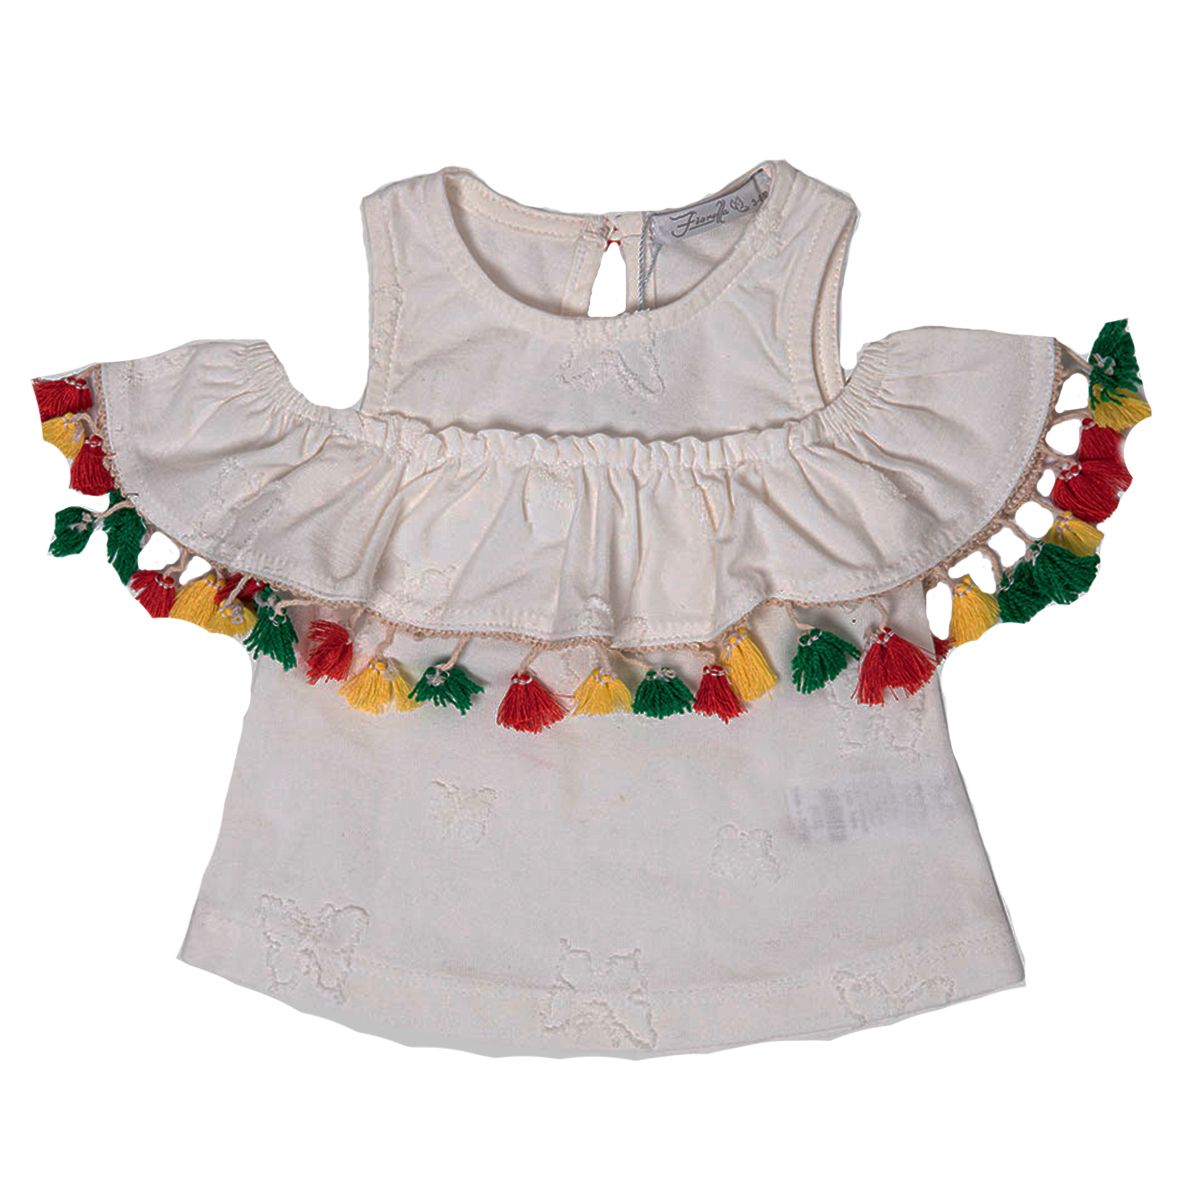 ست تی شرت و شورت نوزادی دخترانه فیورلا مدل 21013 -  - 2